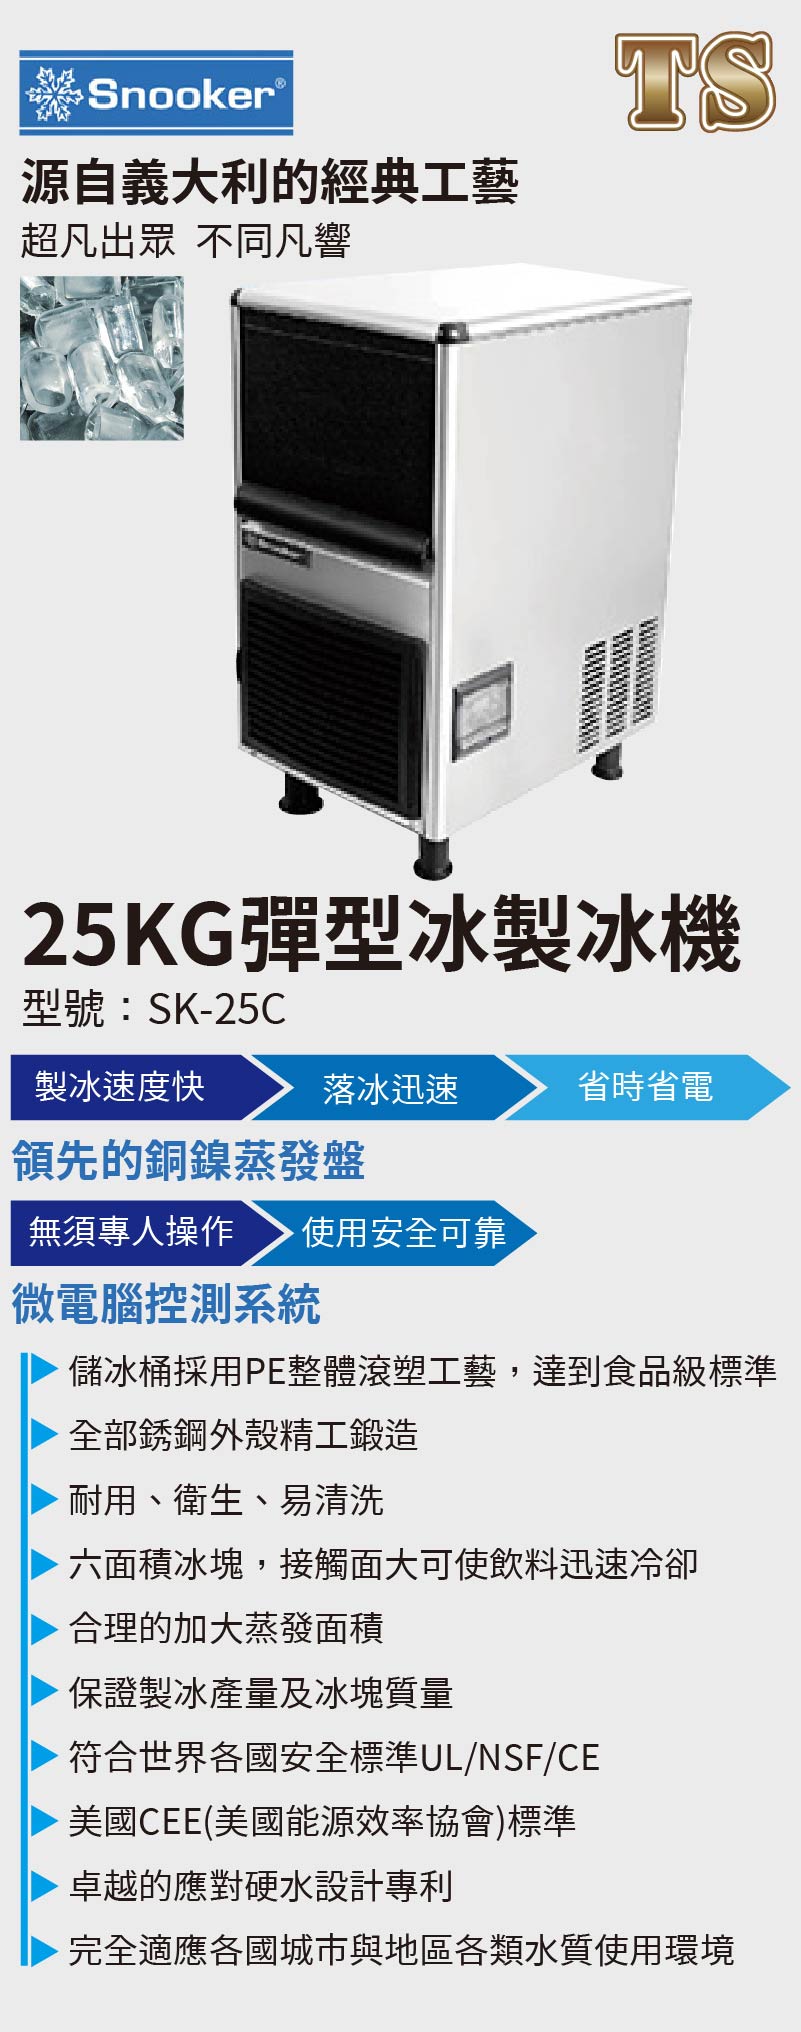 25KG彈型冰製冰機